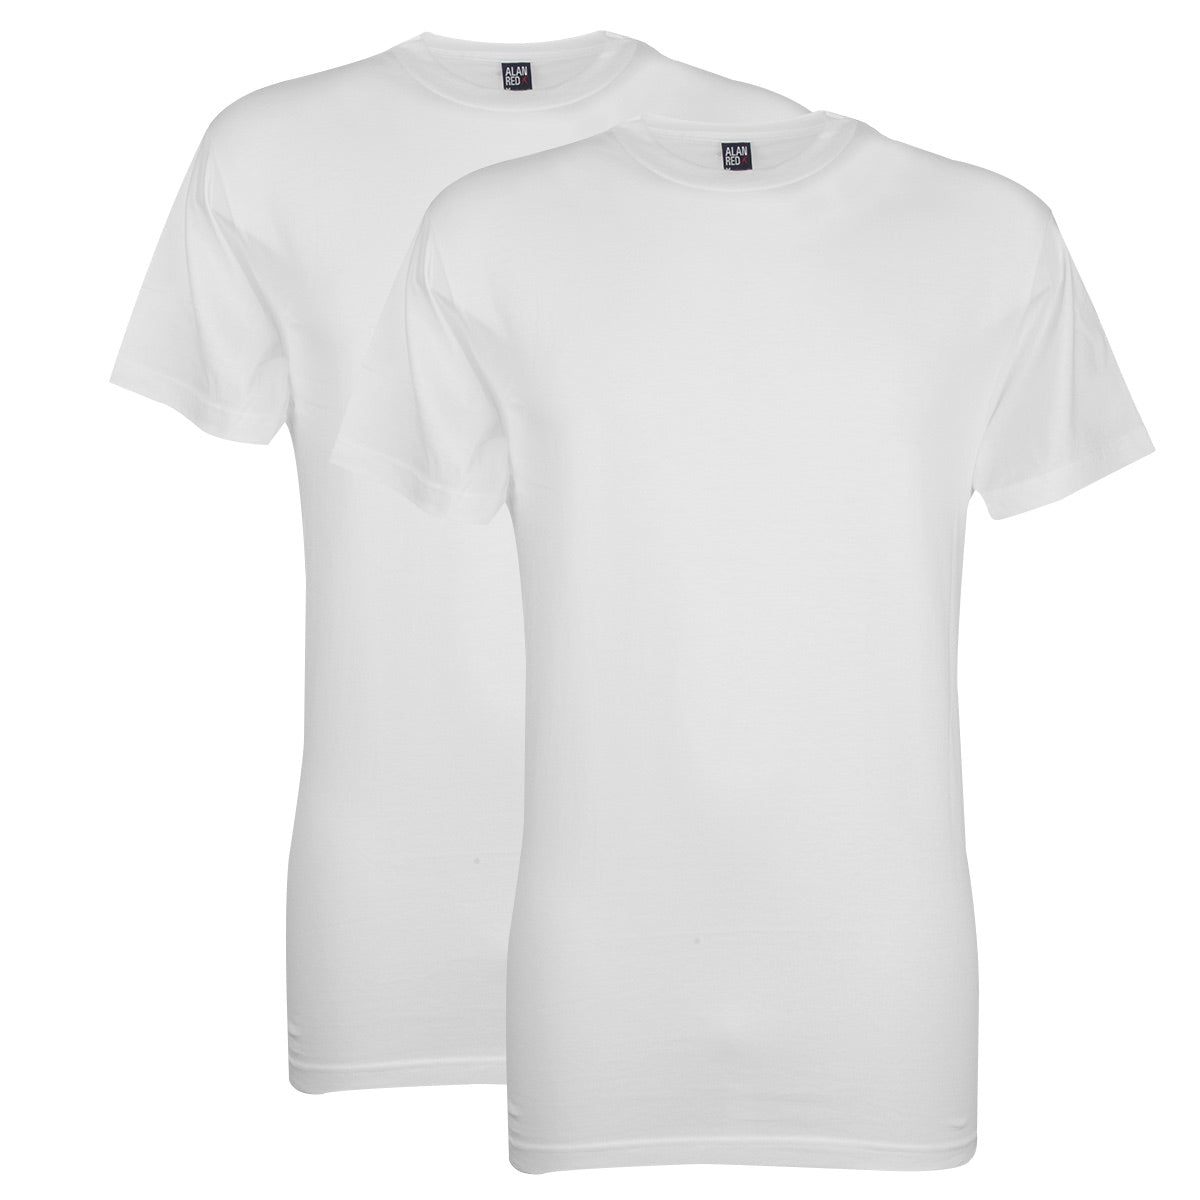 Deze Alan Red Virginia T-shirts raden we aan voor iedereen die graag een stevige en hoge boord draagt. Dit witte T-shirt heeft namelijk een ronde, hoogsluitende hals. De rand langs de hals heeft een breedte van 2,6 cm. Daarnaast heeft dit shirt een rechte, regular-fit pasvorm die comfortabel draagt. 